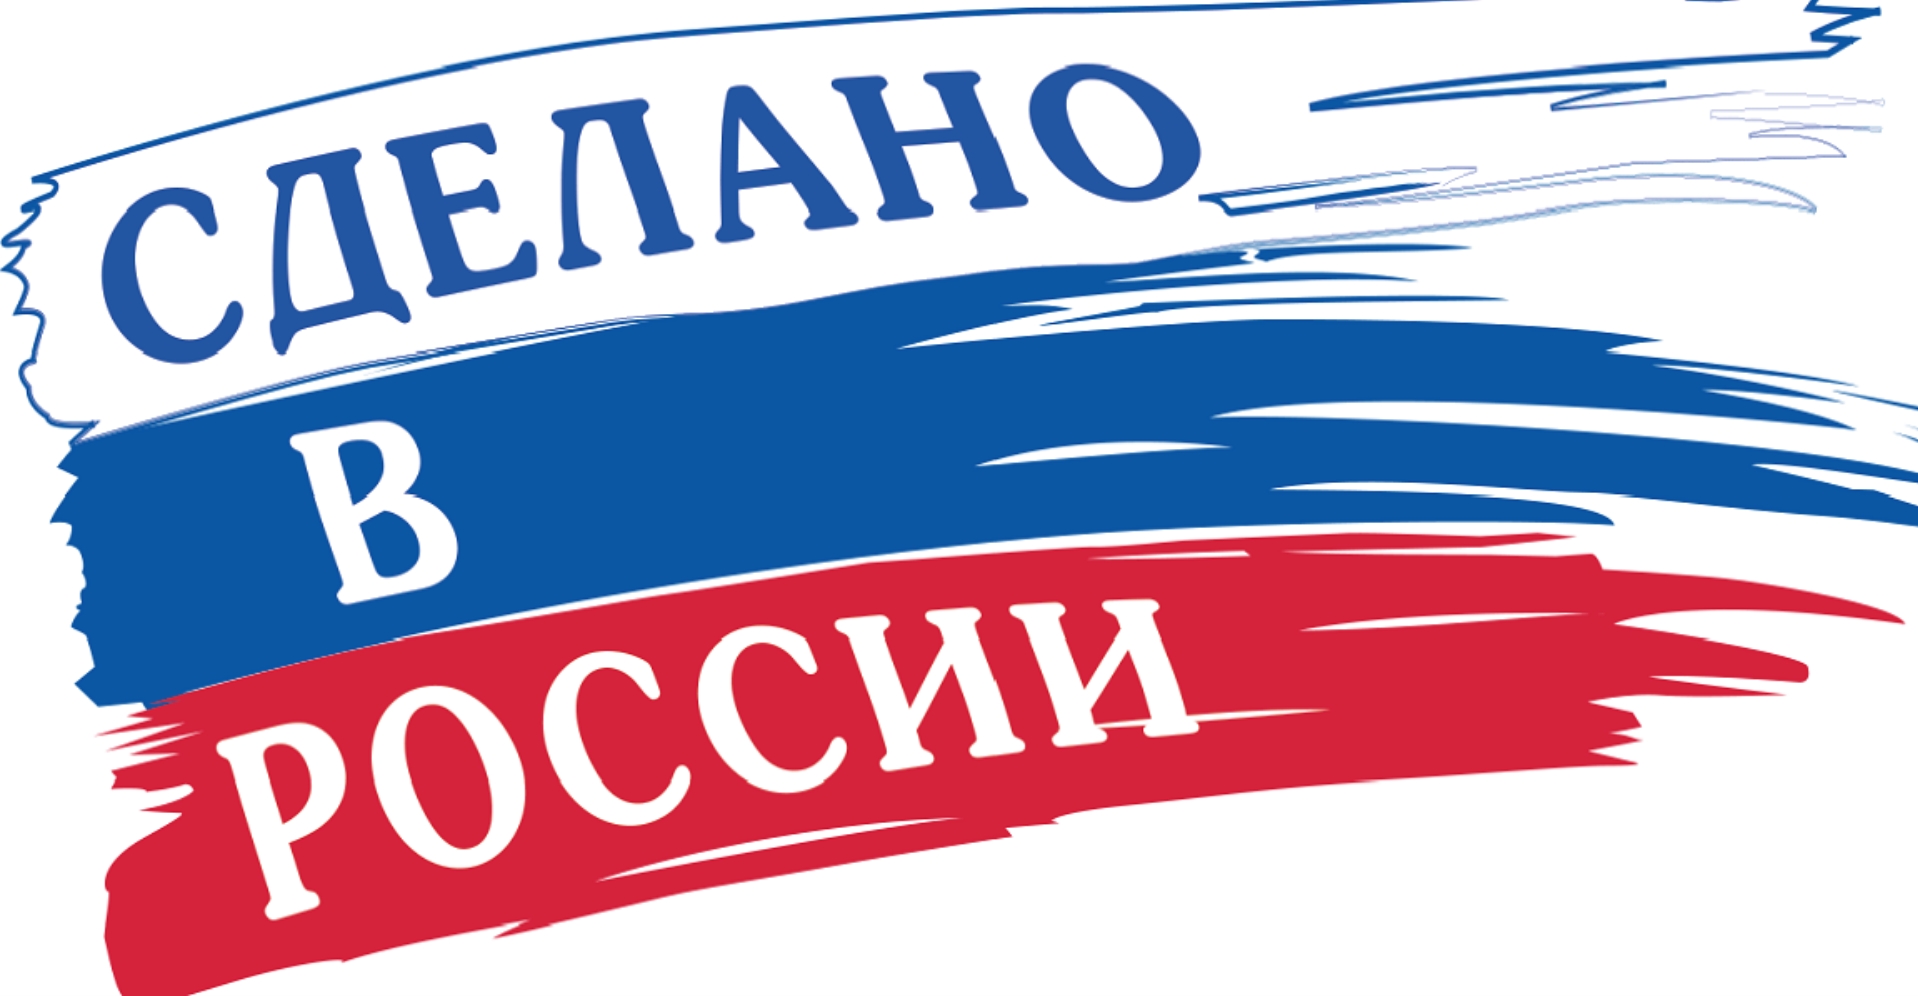 Ведомства согласовывают директивы госкомпаниям о предоставлении преференций российской продукции при закупках